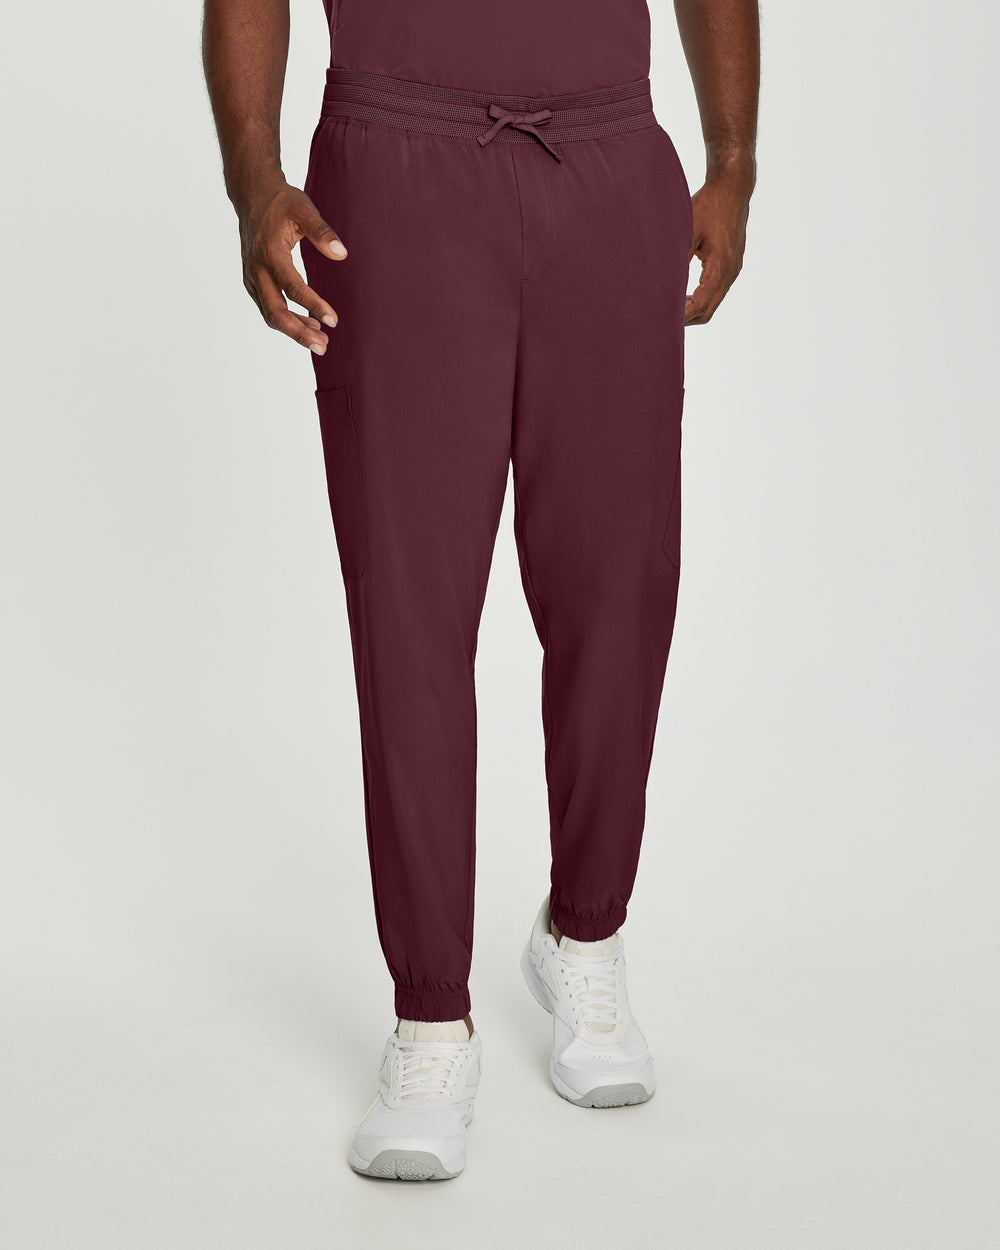 Men's jogger pants - FIT - 223T tall